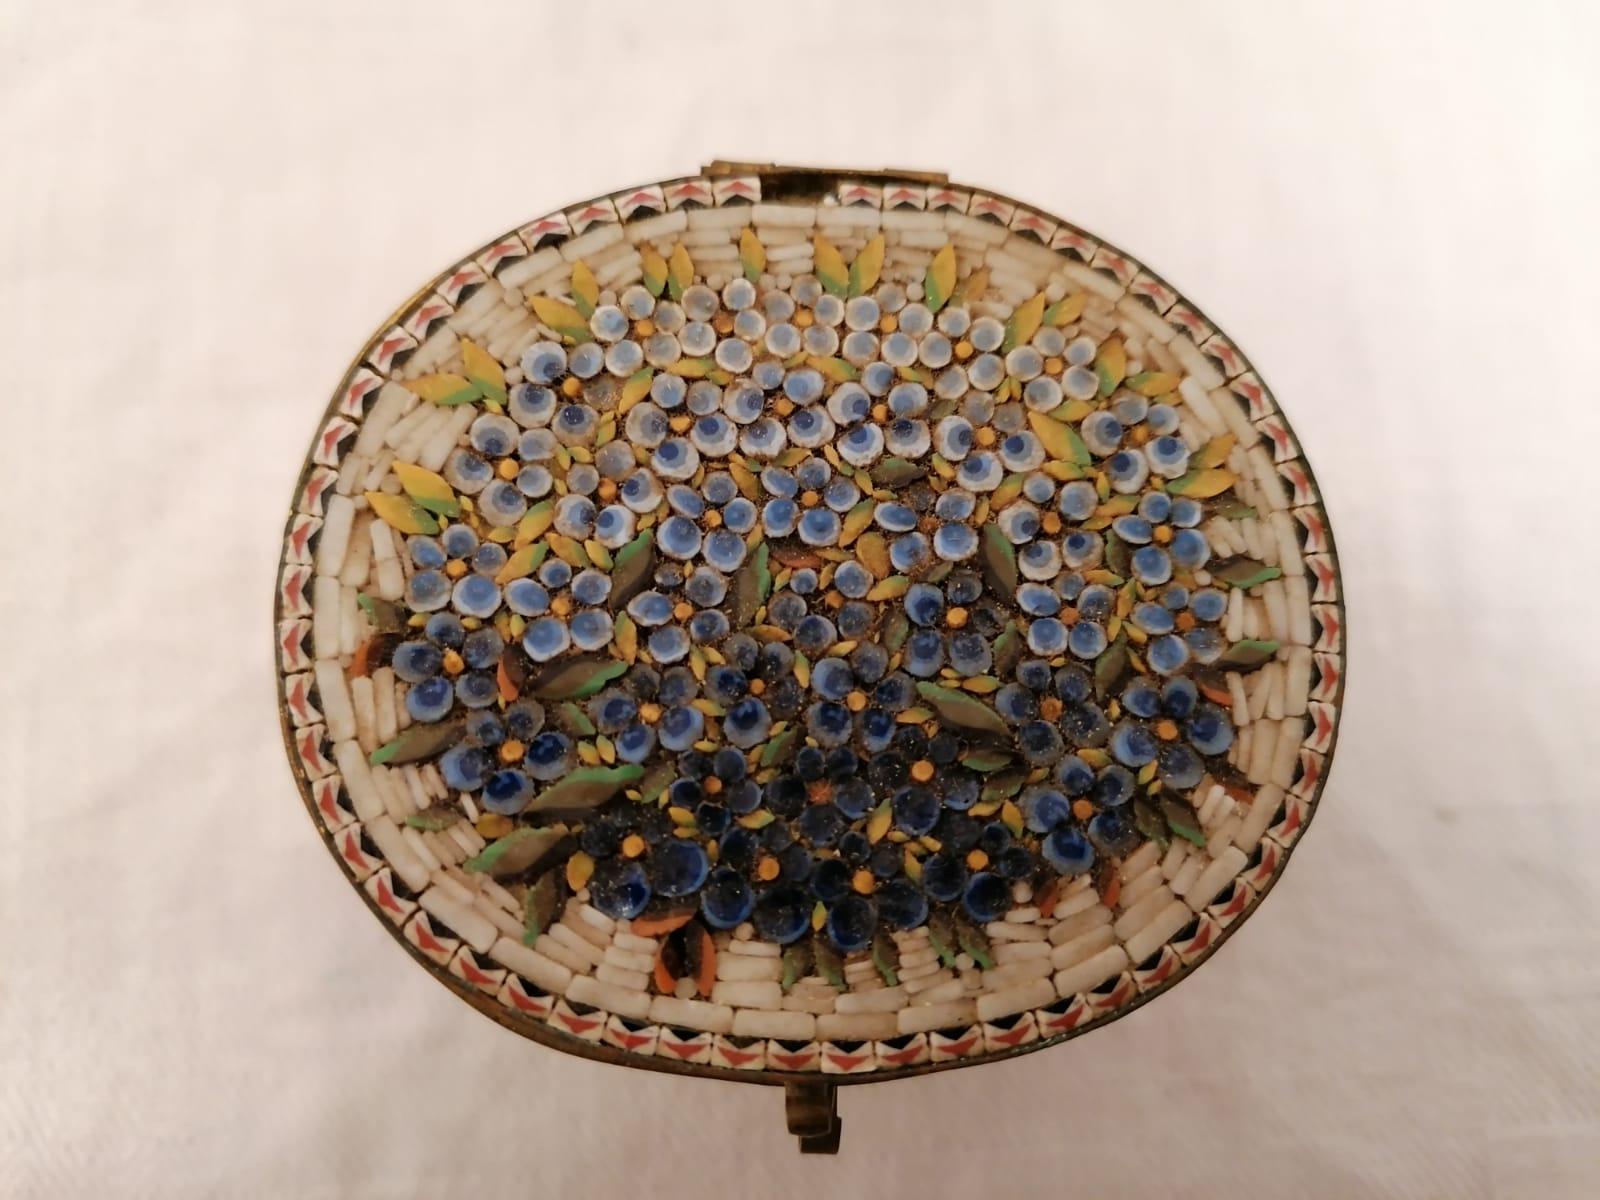 Messingdose, ursprünglich vergoldet mit Glassteinen, hergestellt in Italien, um 1880.